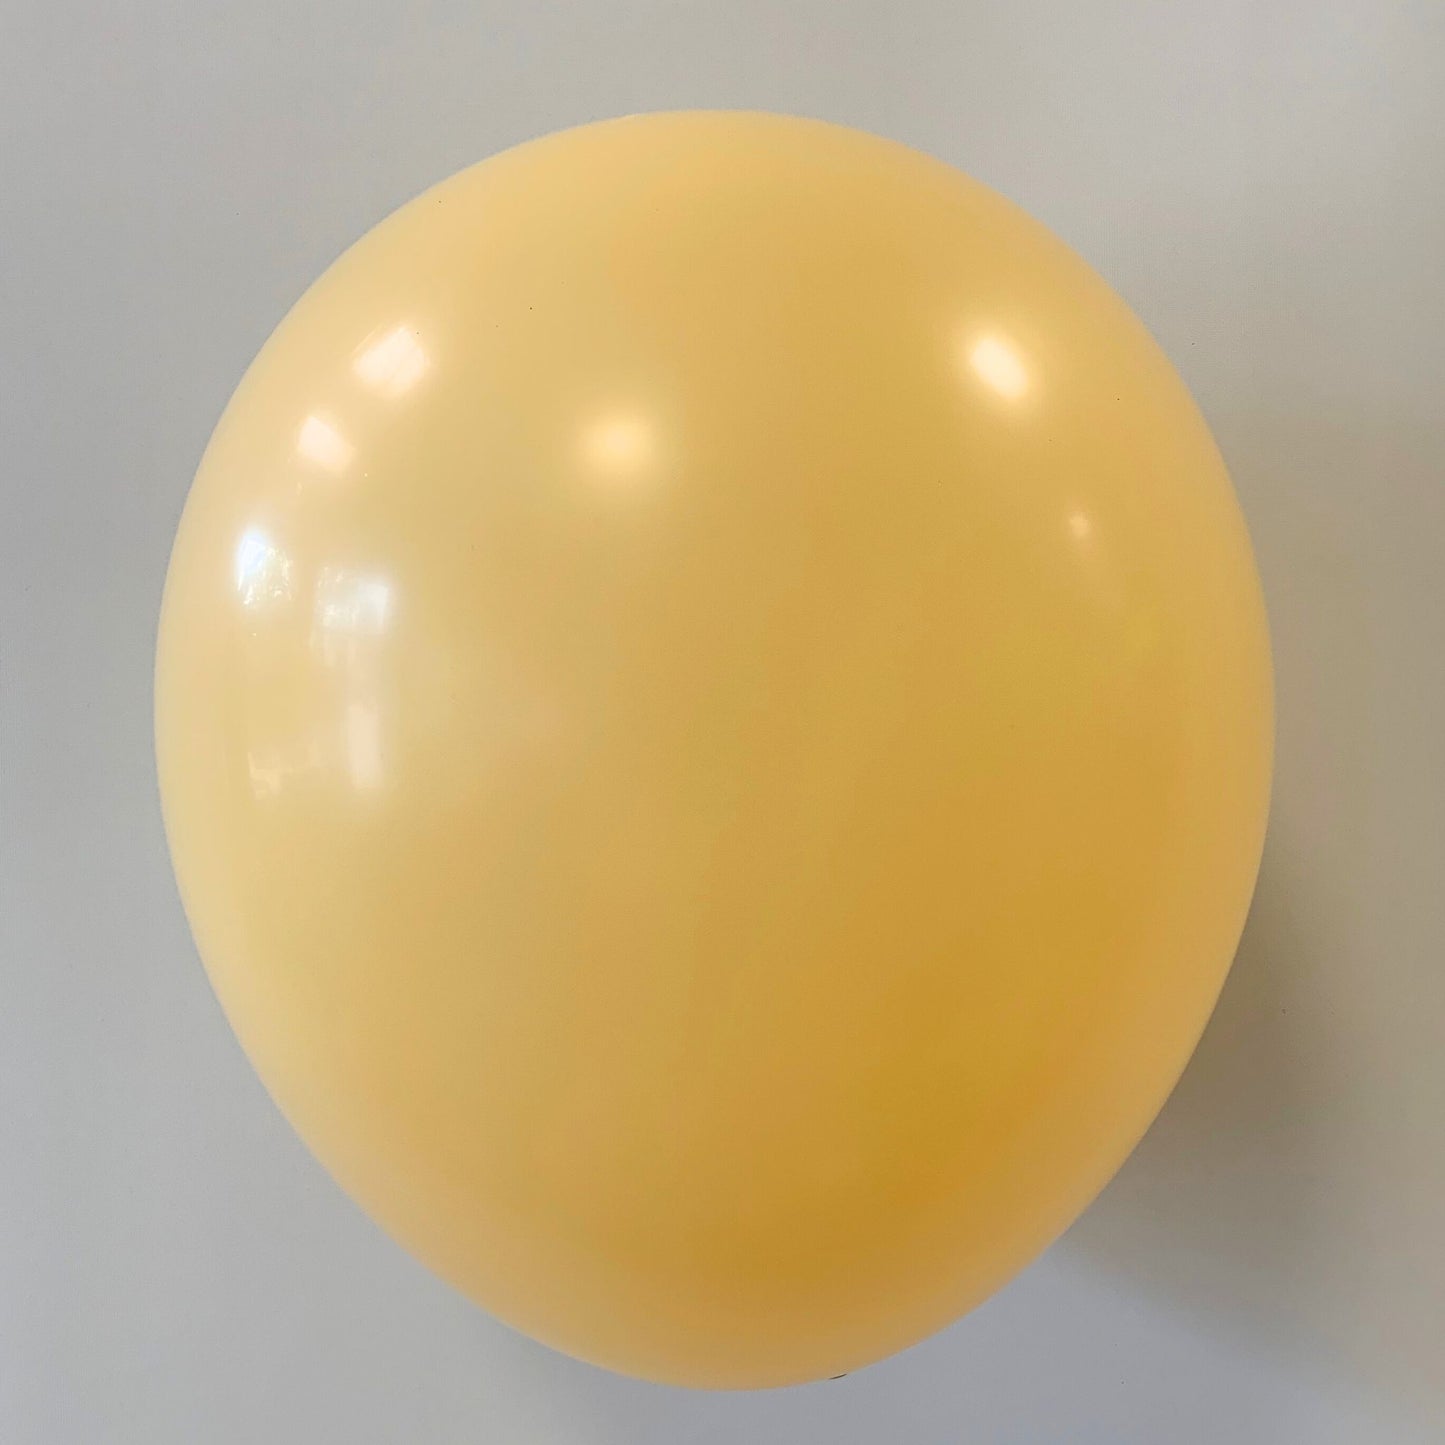 11 inch helium filled Peach Blush latex balloon